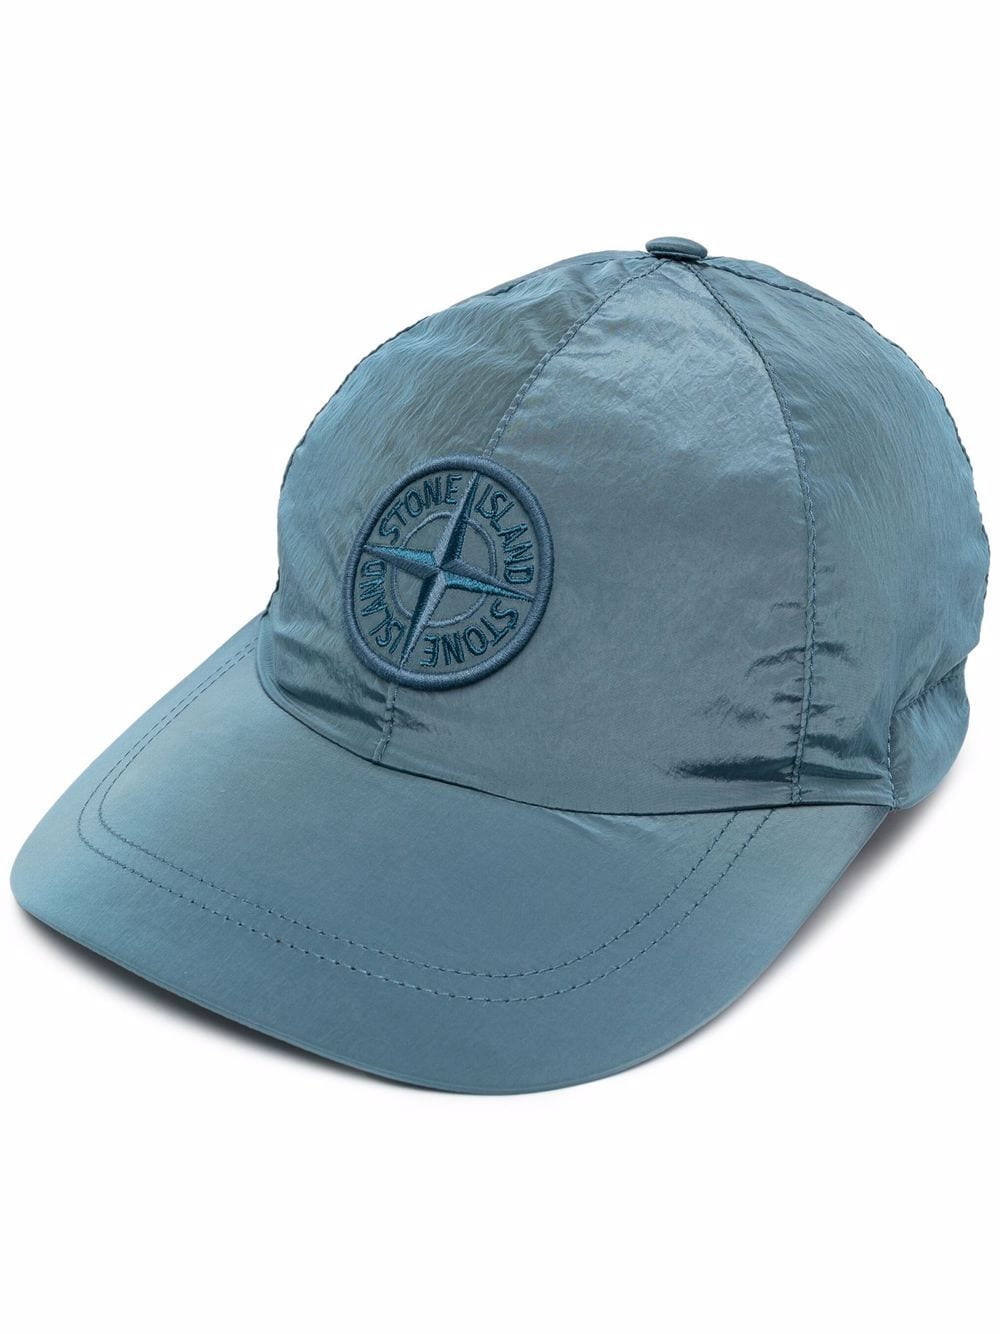 фото Stone island кепка с вышитым логотипом compass